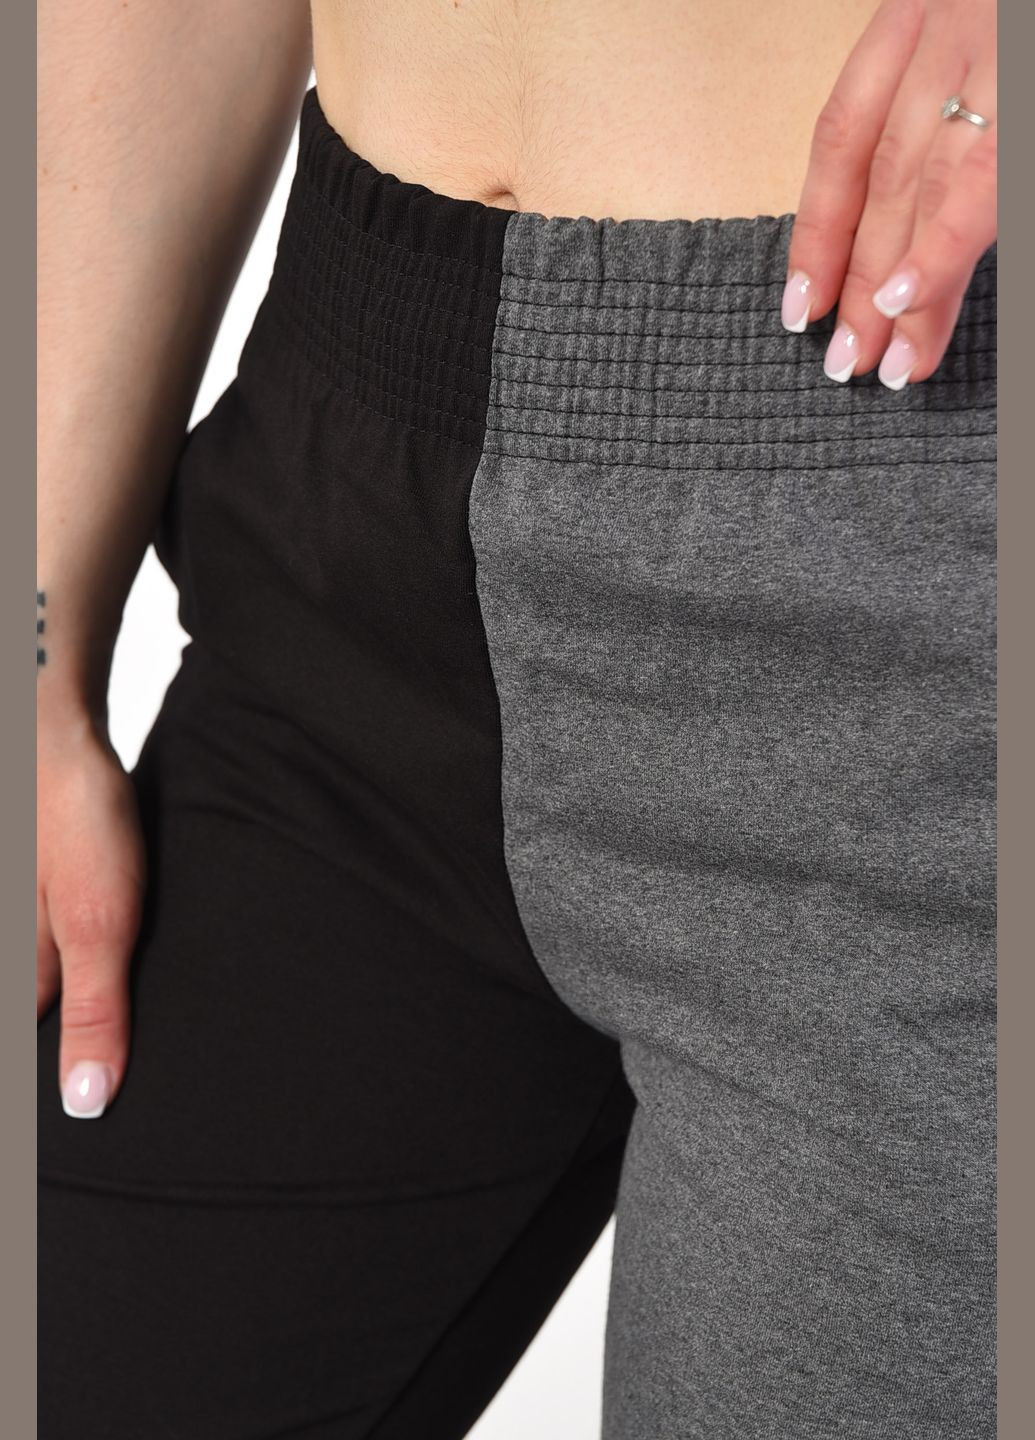 Спортивні штани жіночі чорно-сірого кольору Let's Shop (293476660)